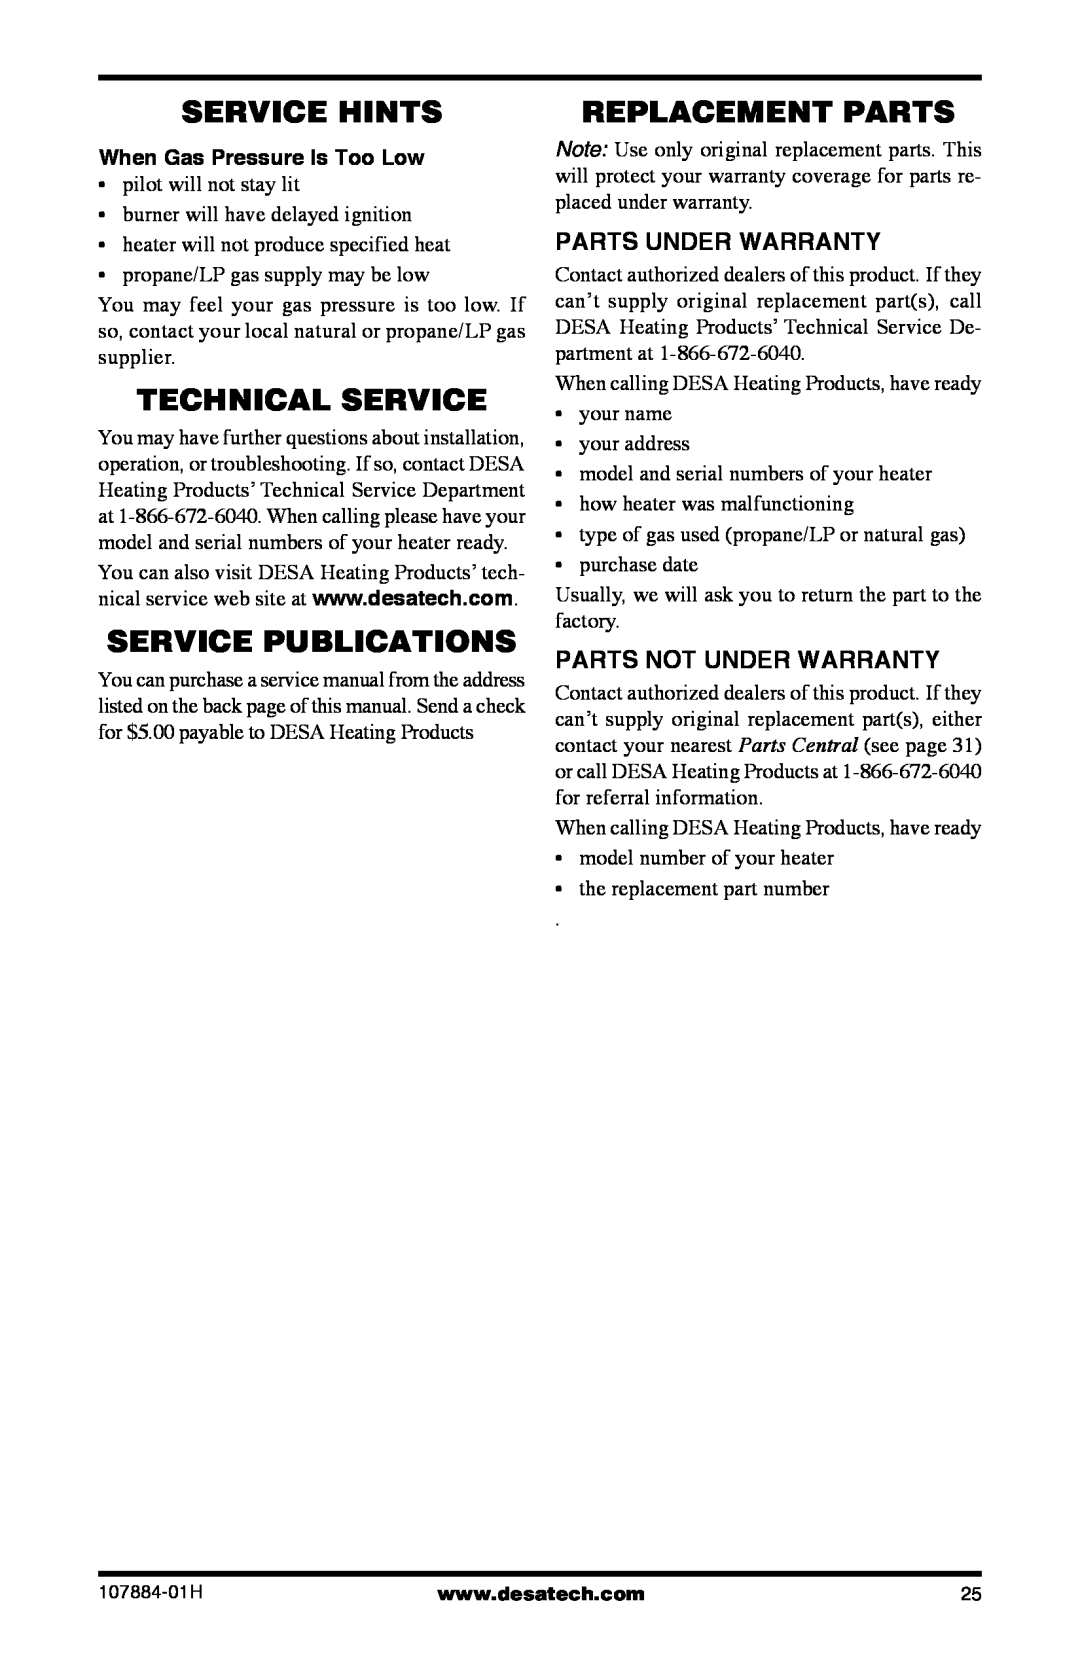 Desa GN30T, GWP30T, GWP20T Service Hints, Technical Service, Service Publications, Replacement Parts, Parts Under Warranty 